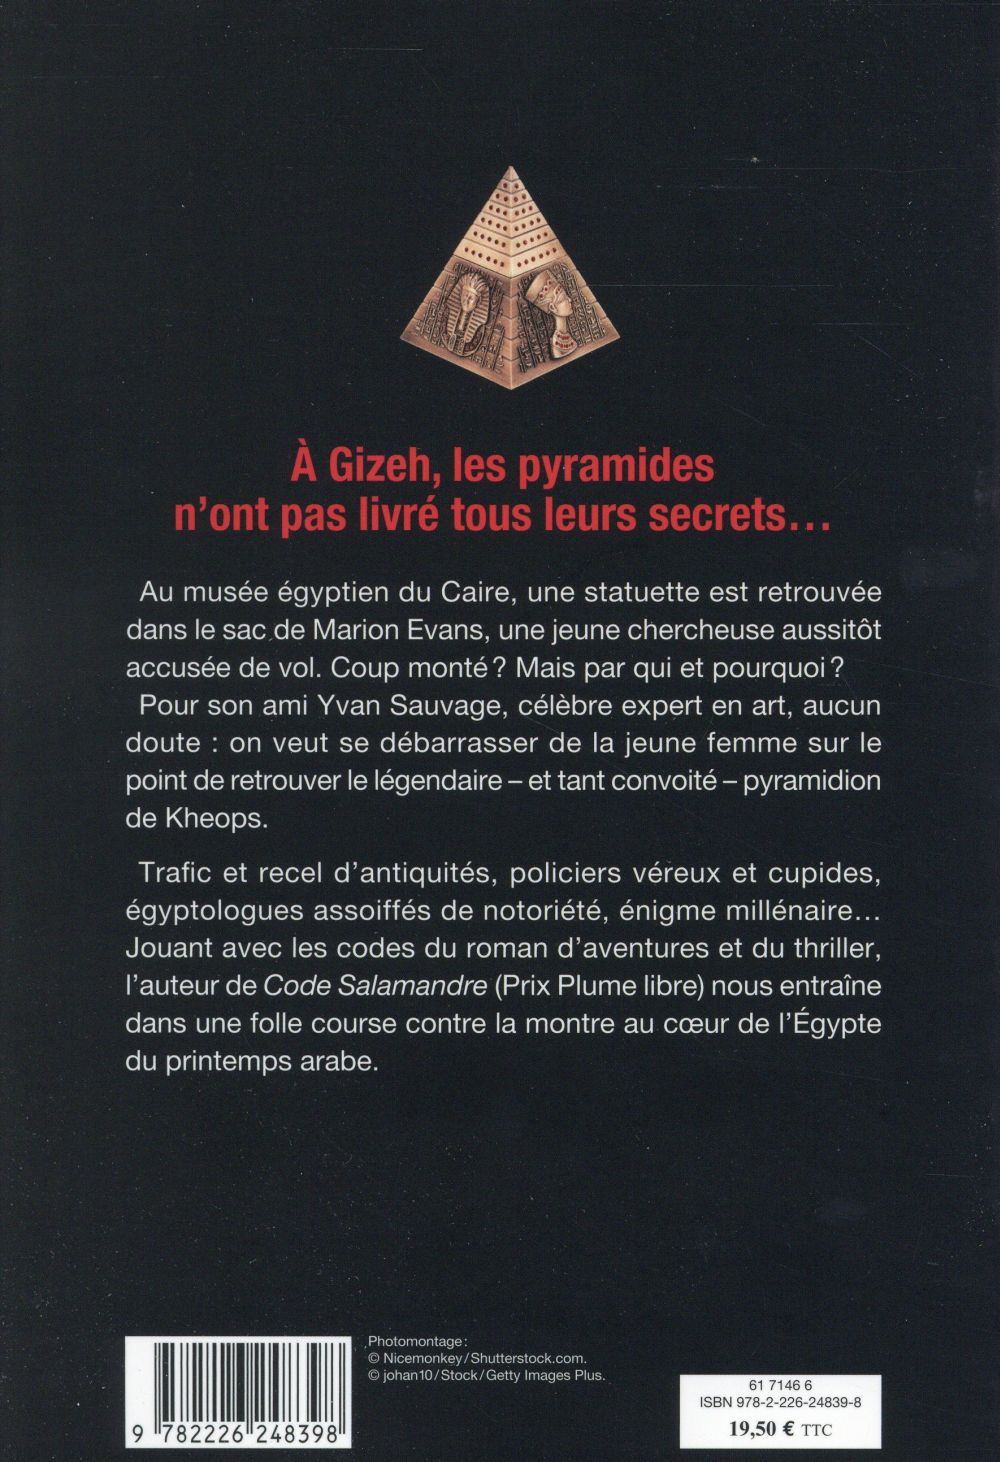 La franc-maçonnerie, la Gnose et le gnosticisme.  - Page 6 97822210